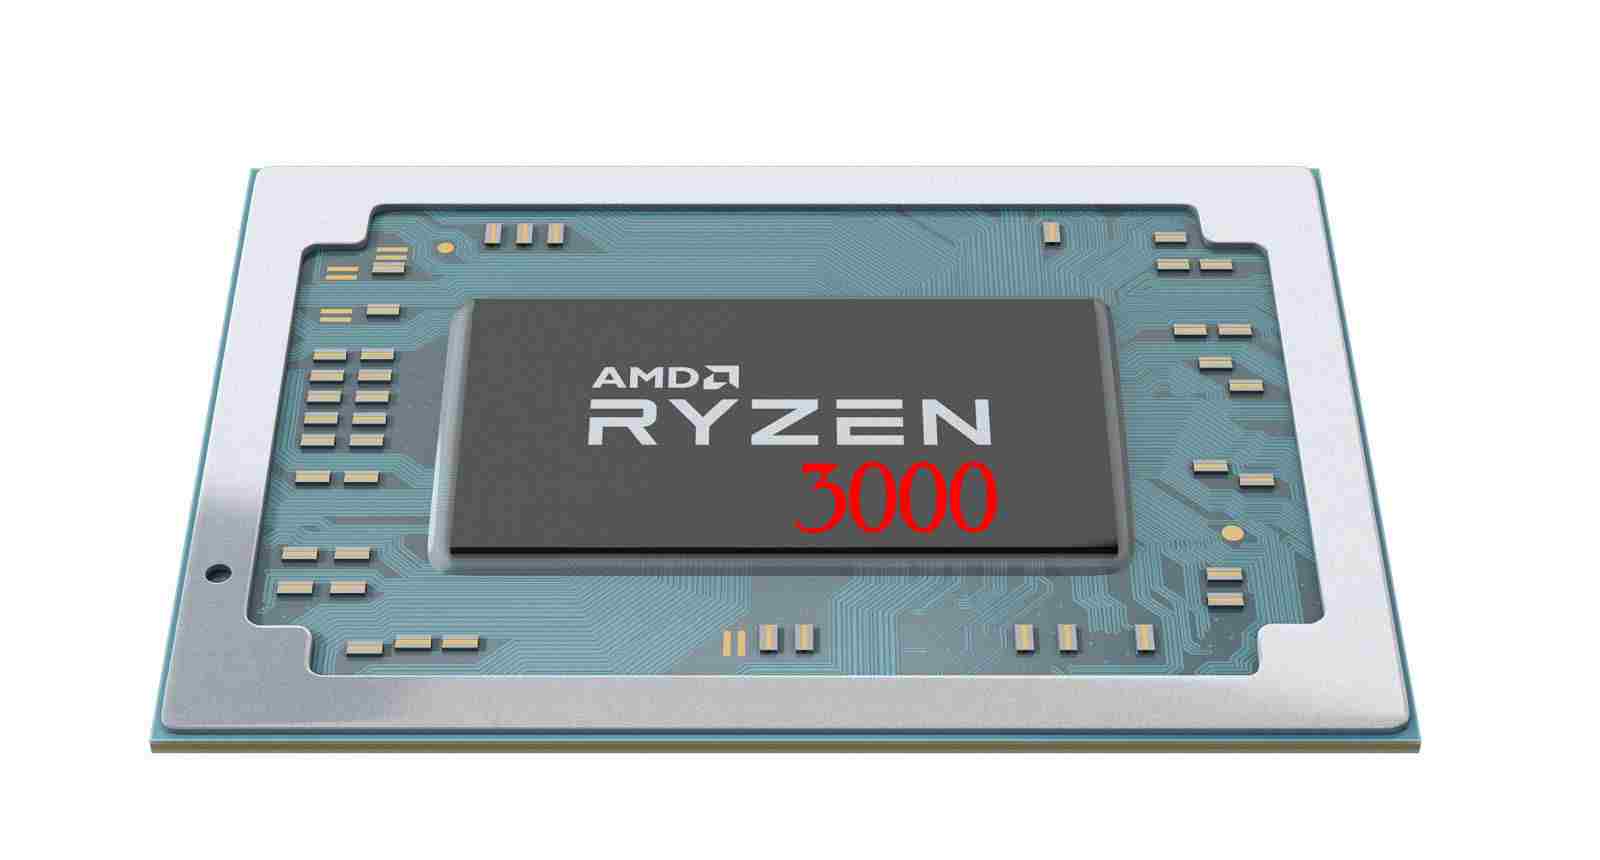 Представлены мобильные процессоры AMD Ryzen 3000